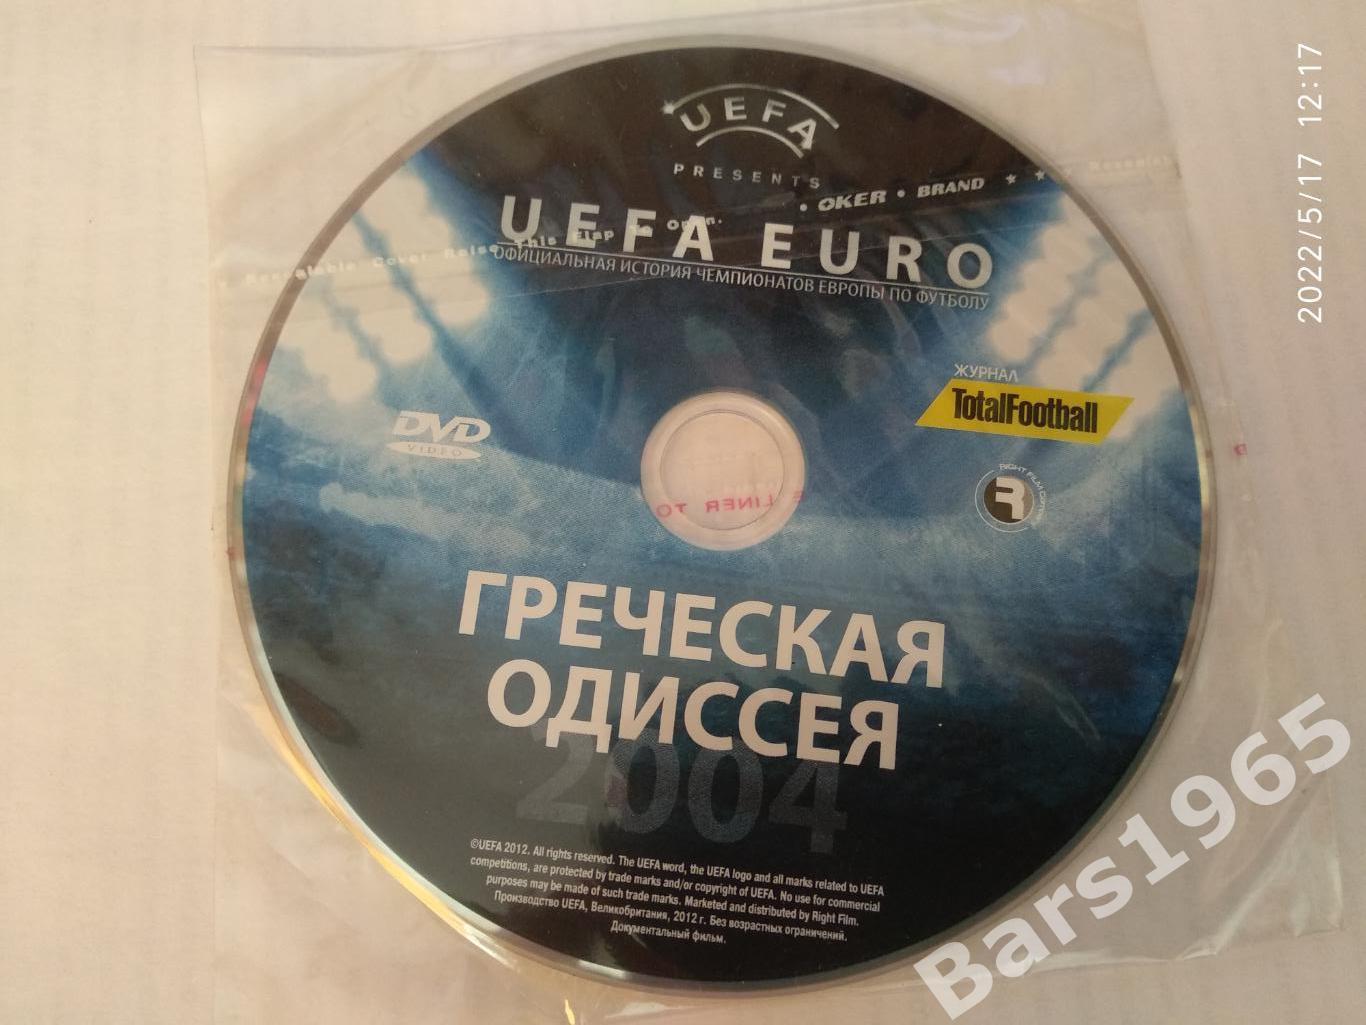 UEFA EURO Греческая одиссея DVD